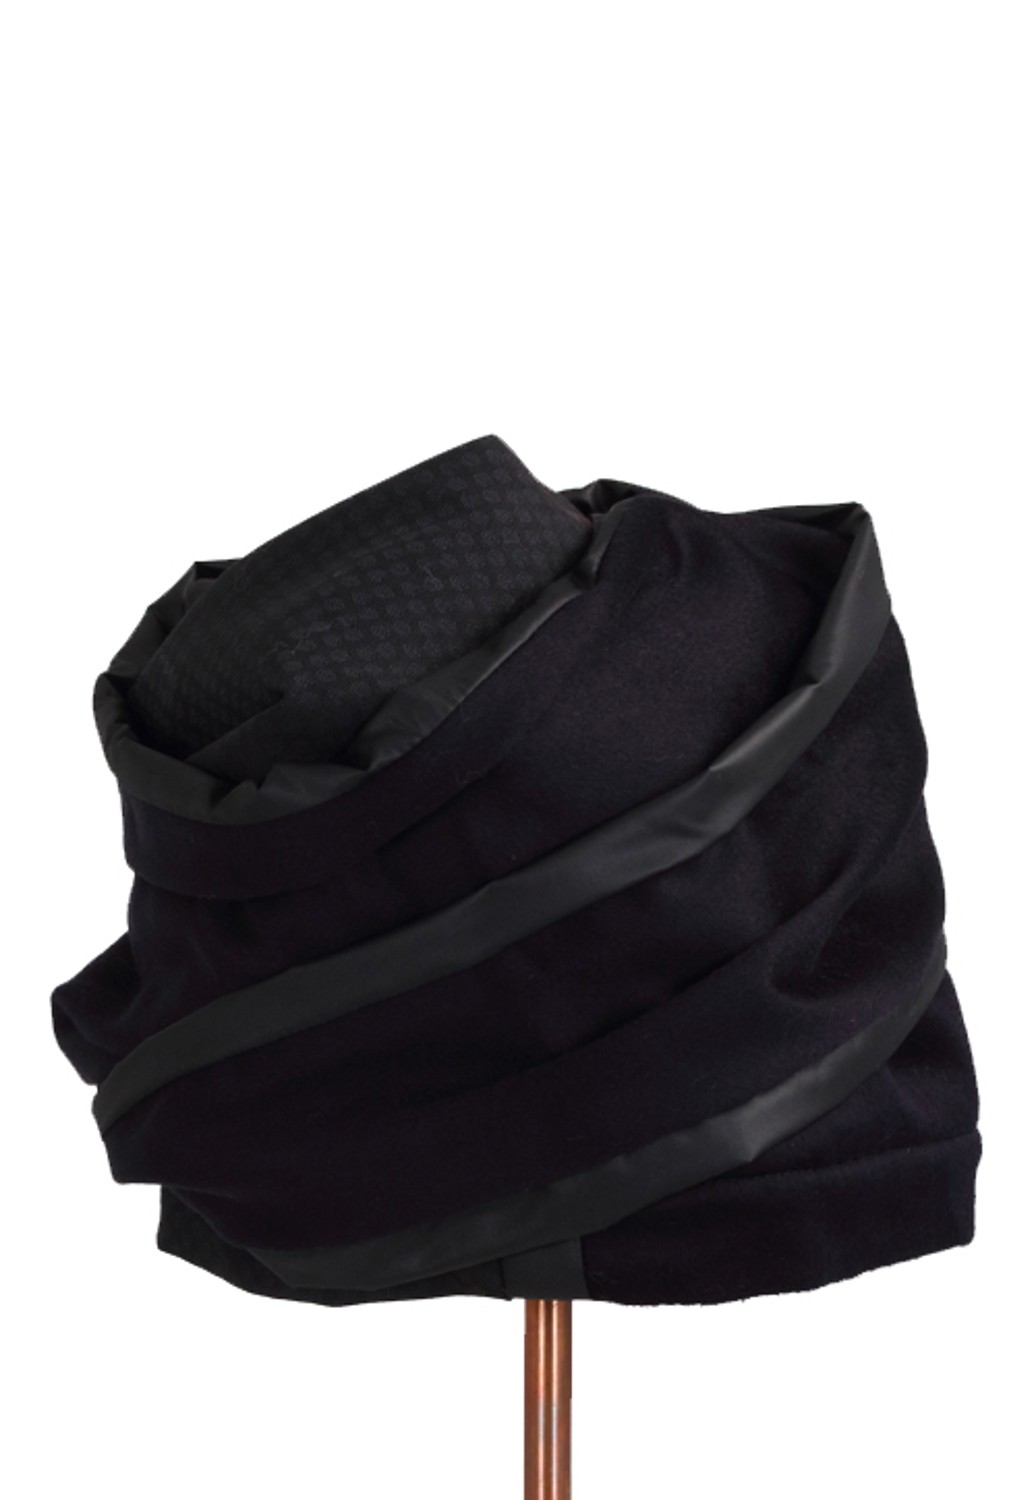 shop Flapper Saldi Accessori: Cappello Flapper, modello Atena, in nylon blu e lana nera, patchwork.

Composizione: 95% lana, 5% nylon. number 1543